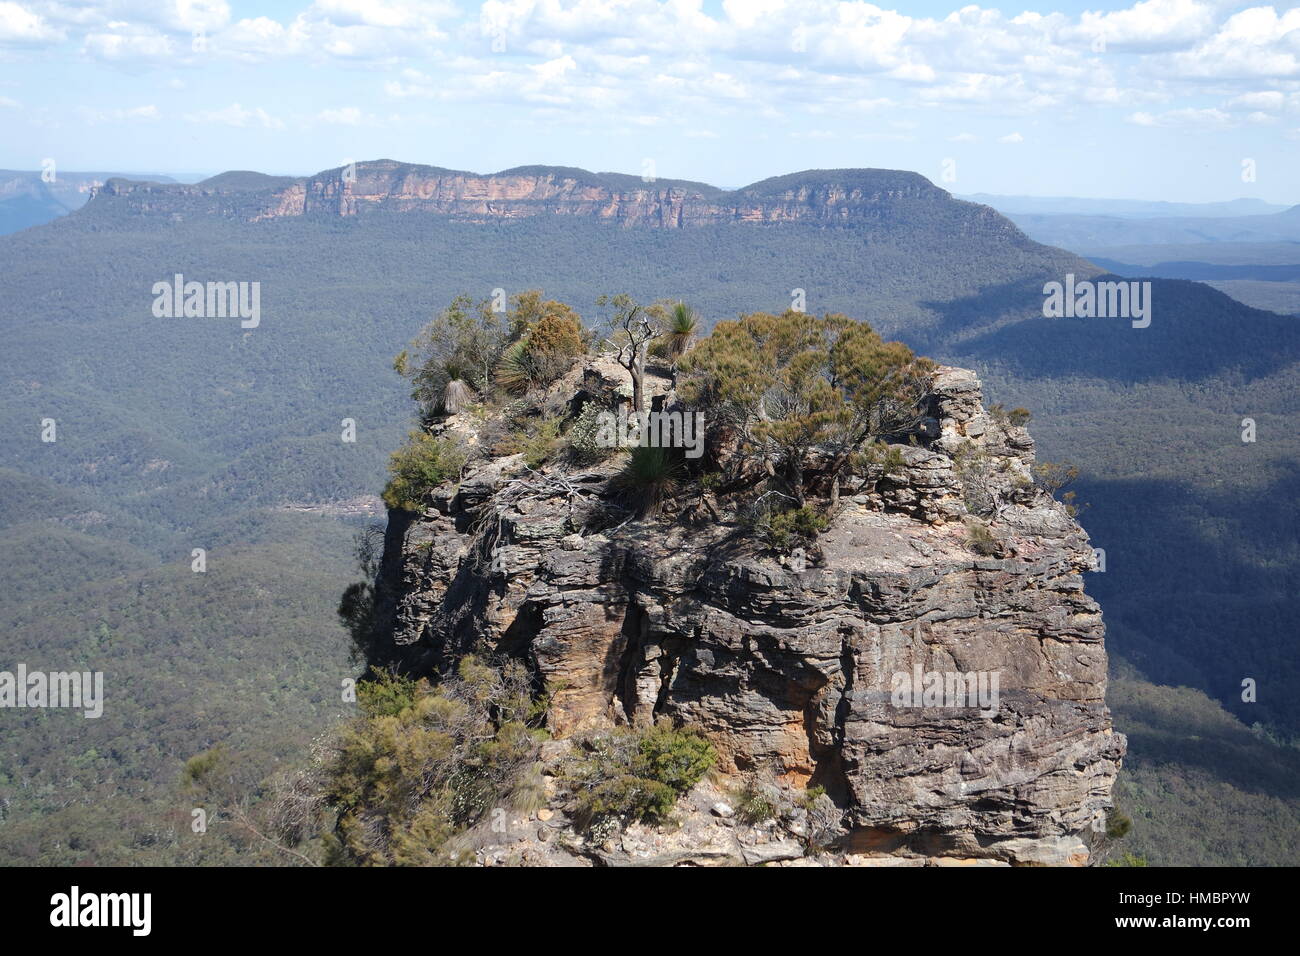 Blue mountain in Australia Stock Photo